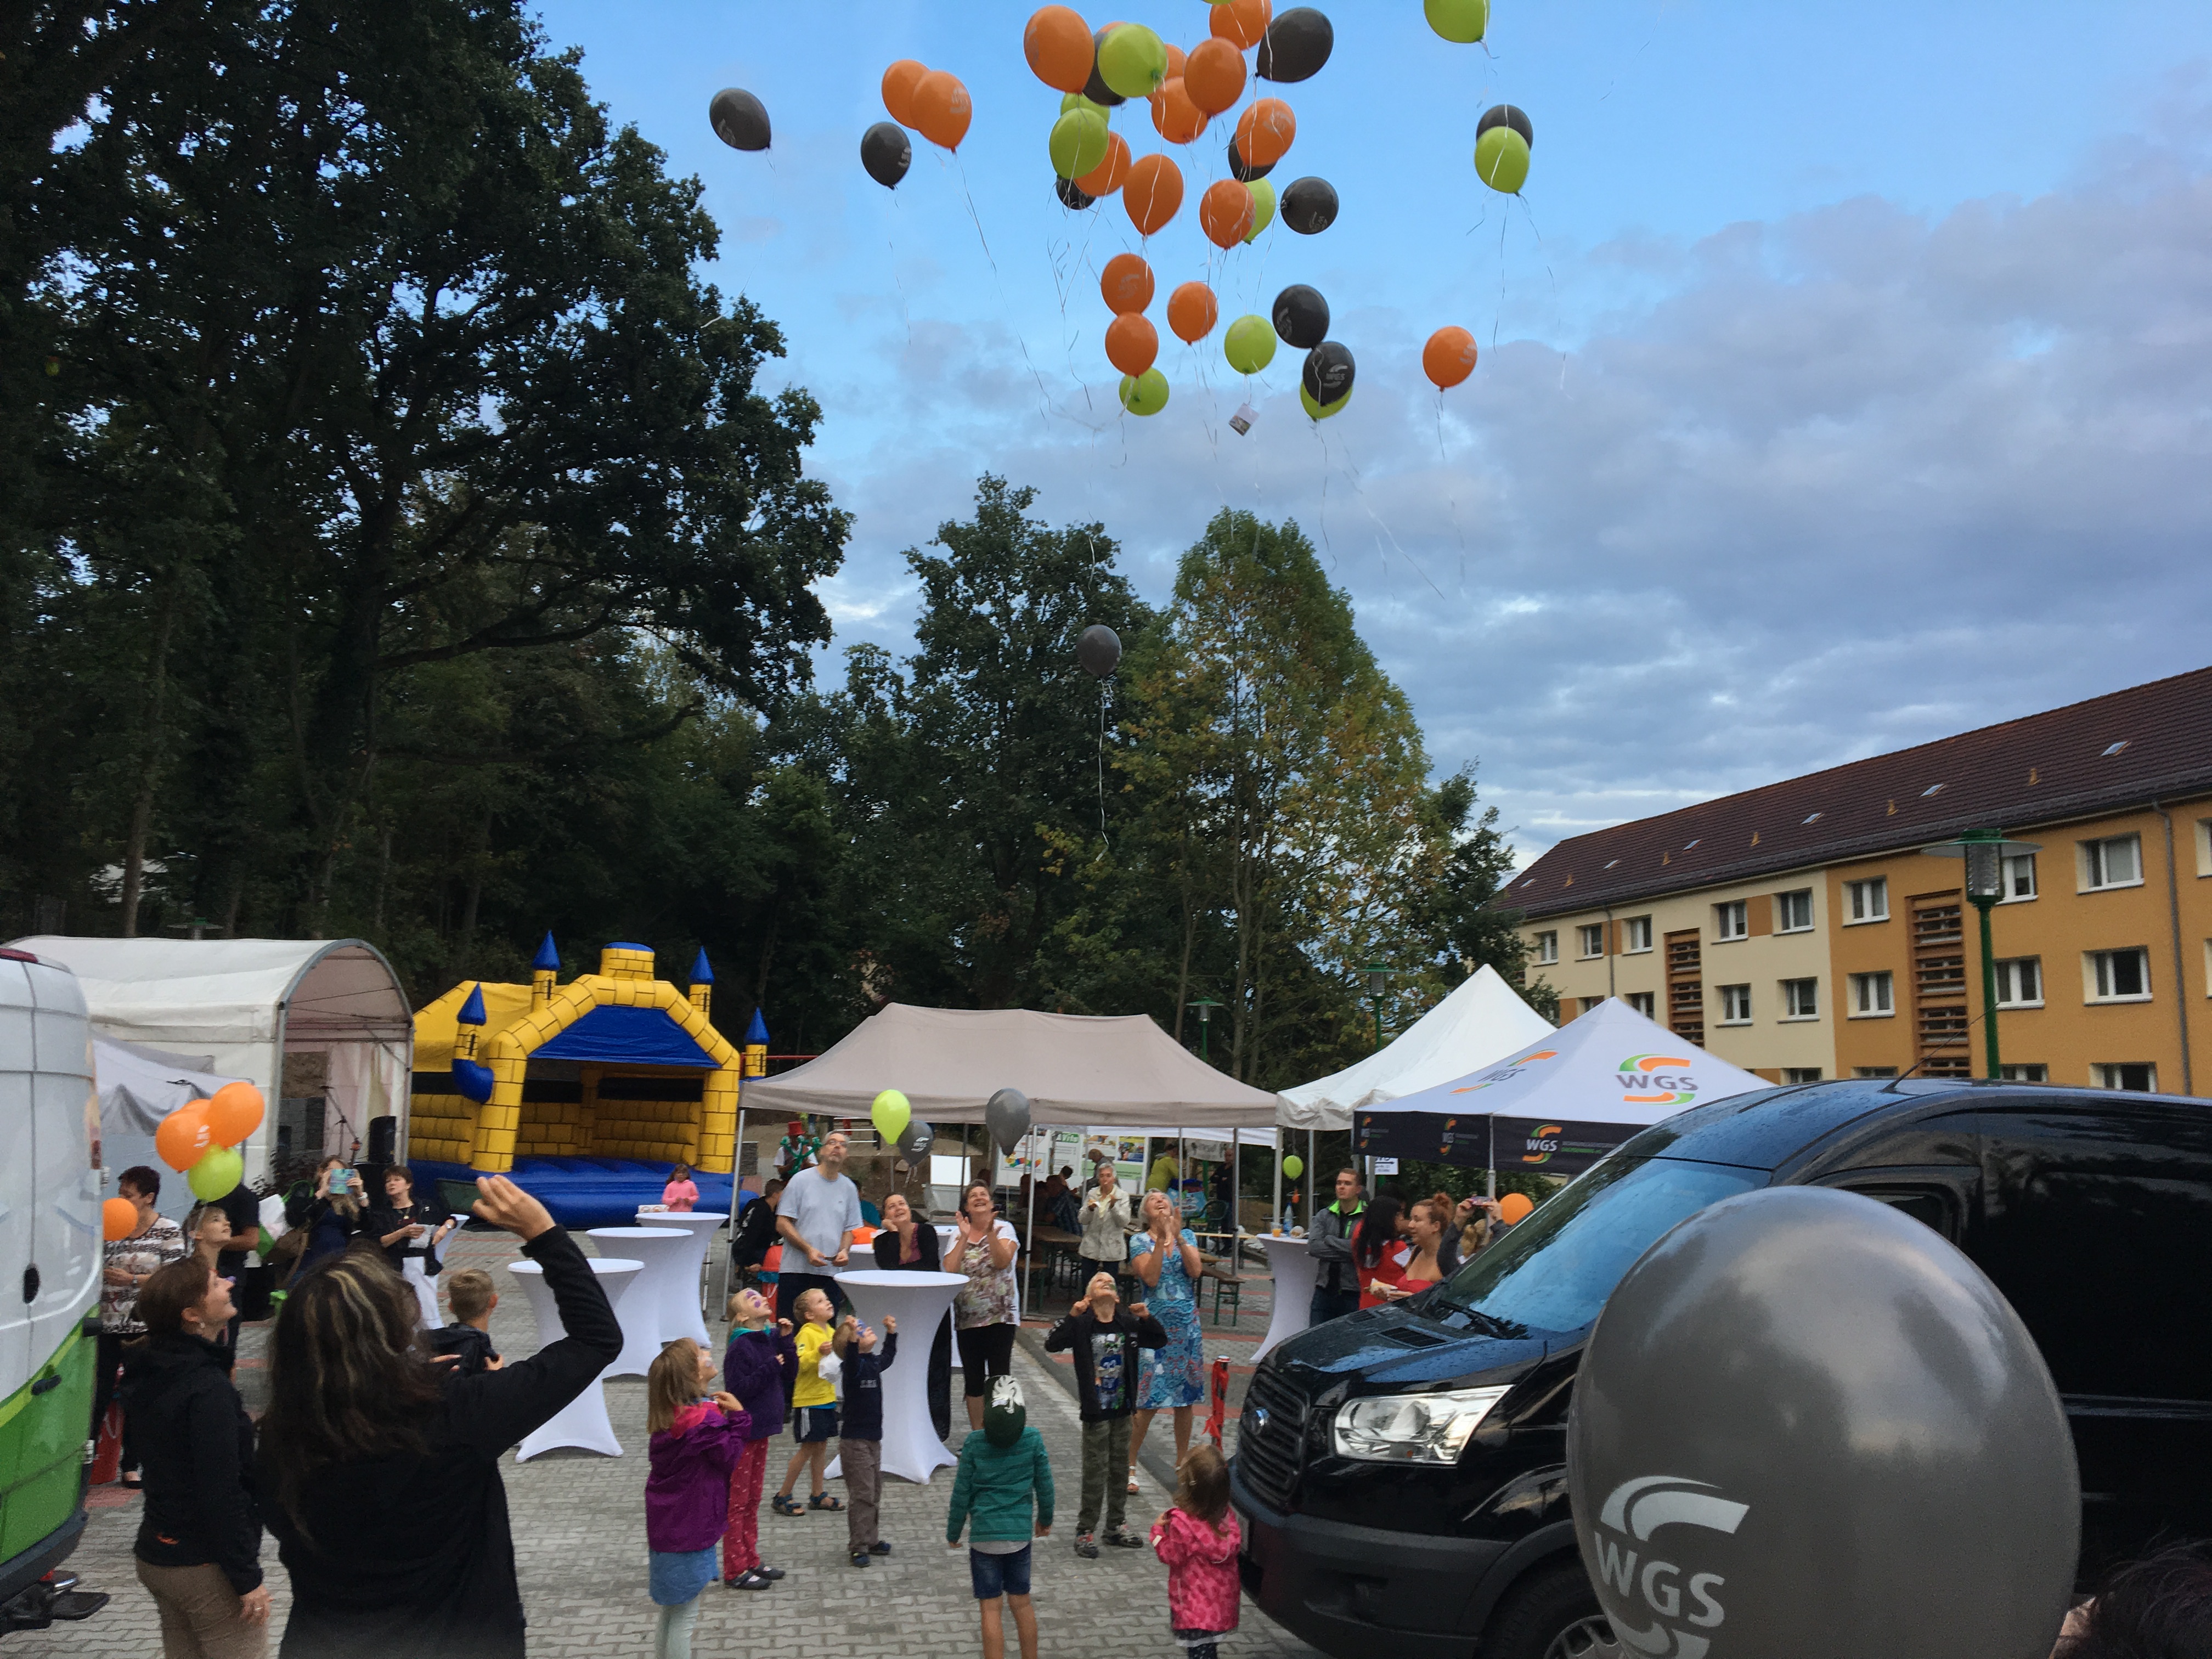 Zum Abschluss des Festes stiegen bunte, mit Helium gefüllte Luftballons in den Himmel.